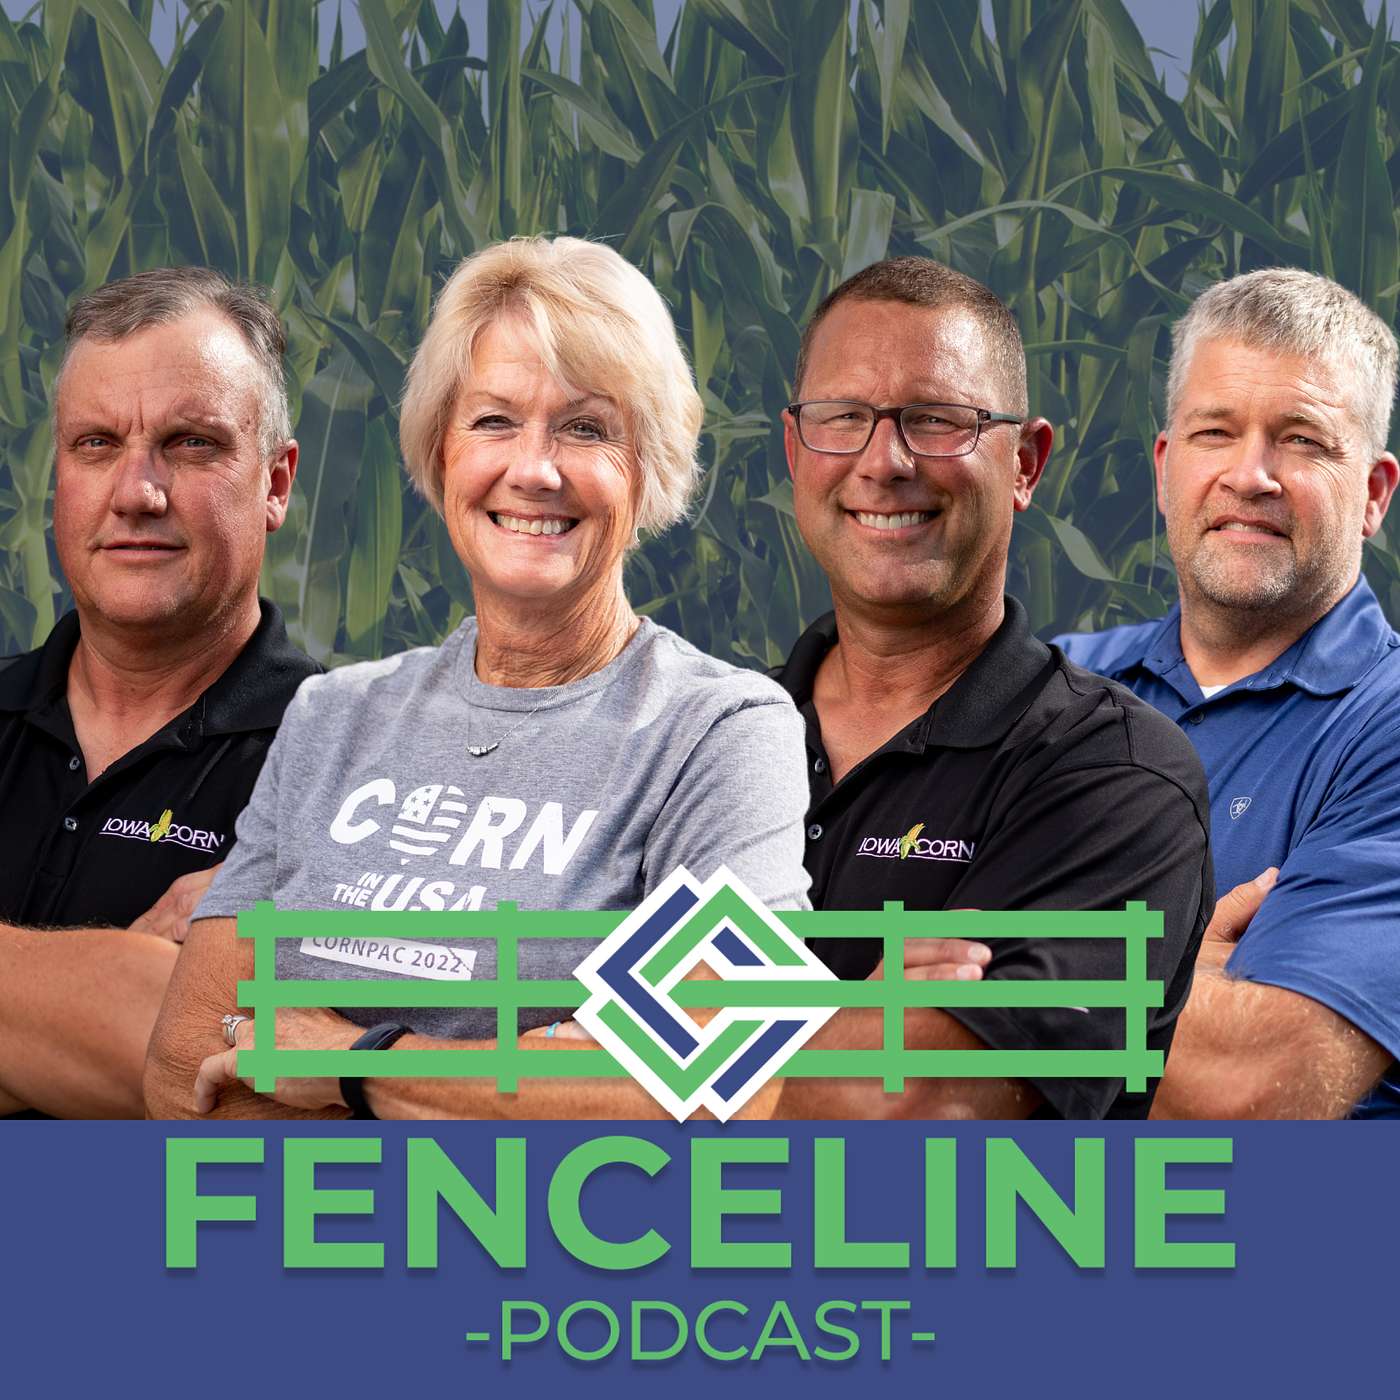 Farming for the Future with Iowa Corn cover art